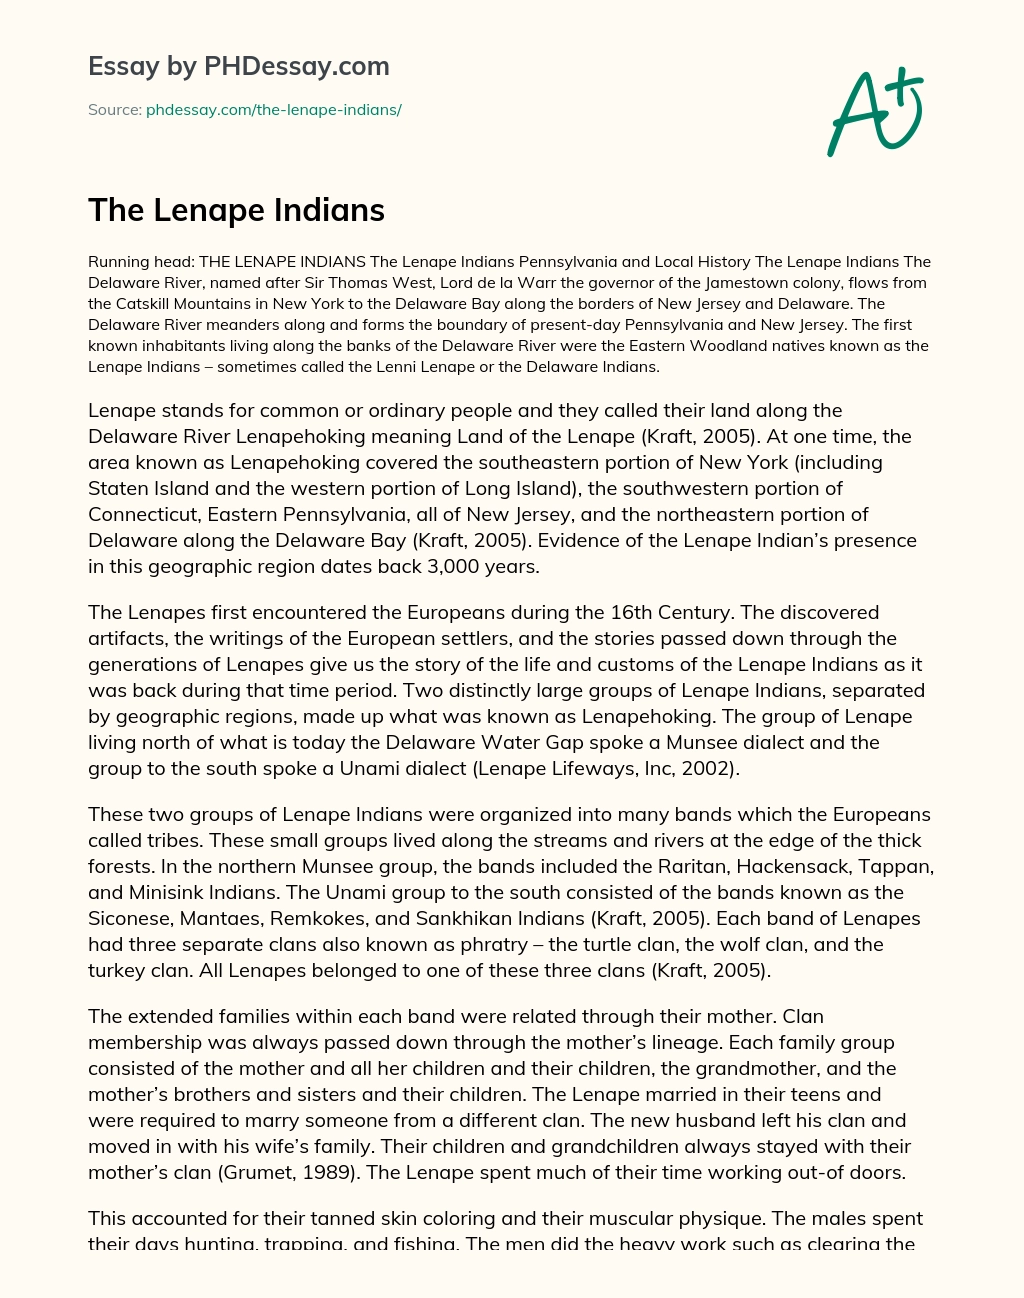 The Lenape Indians essay